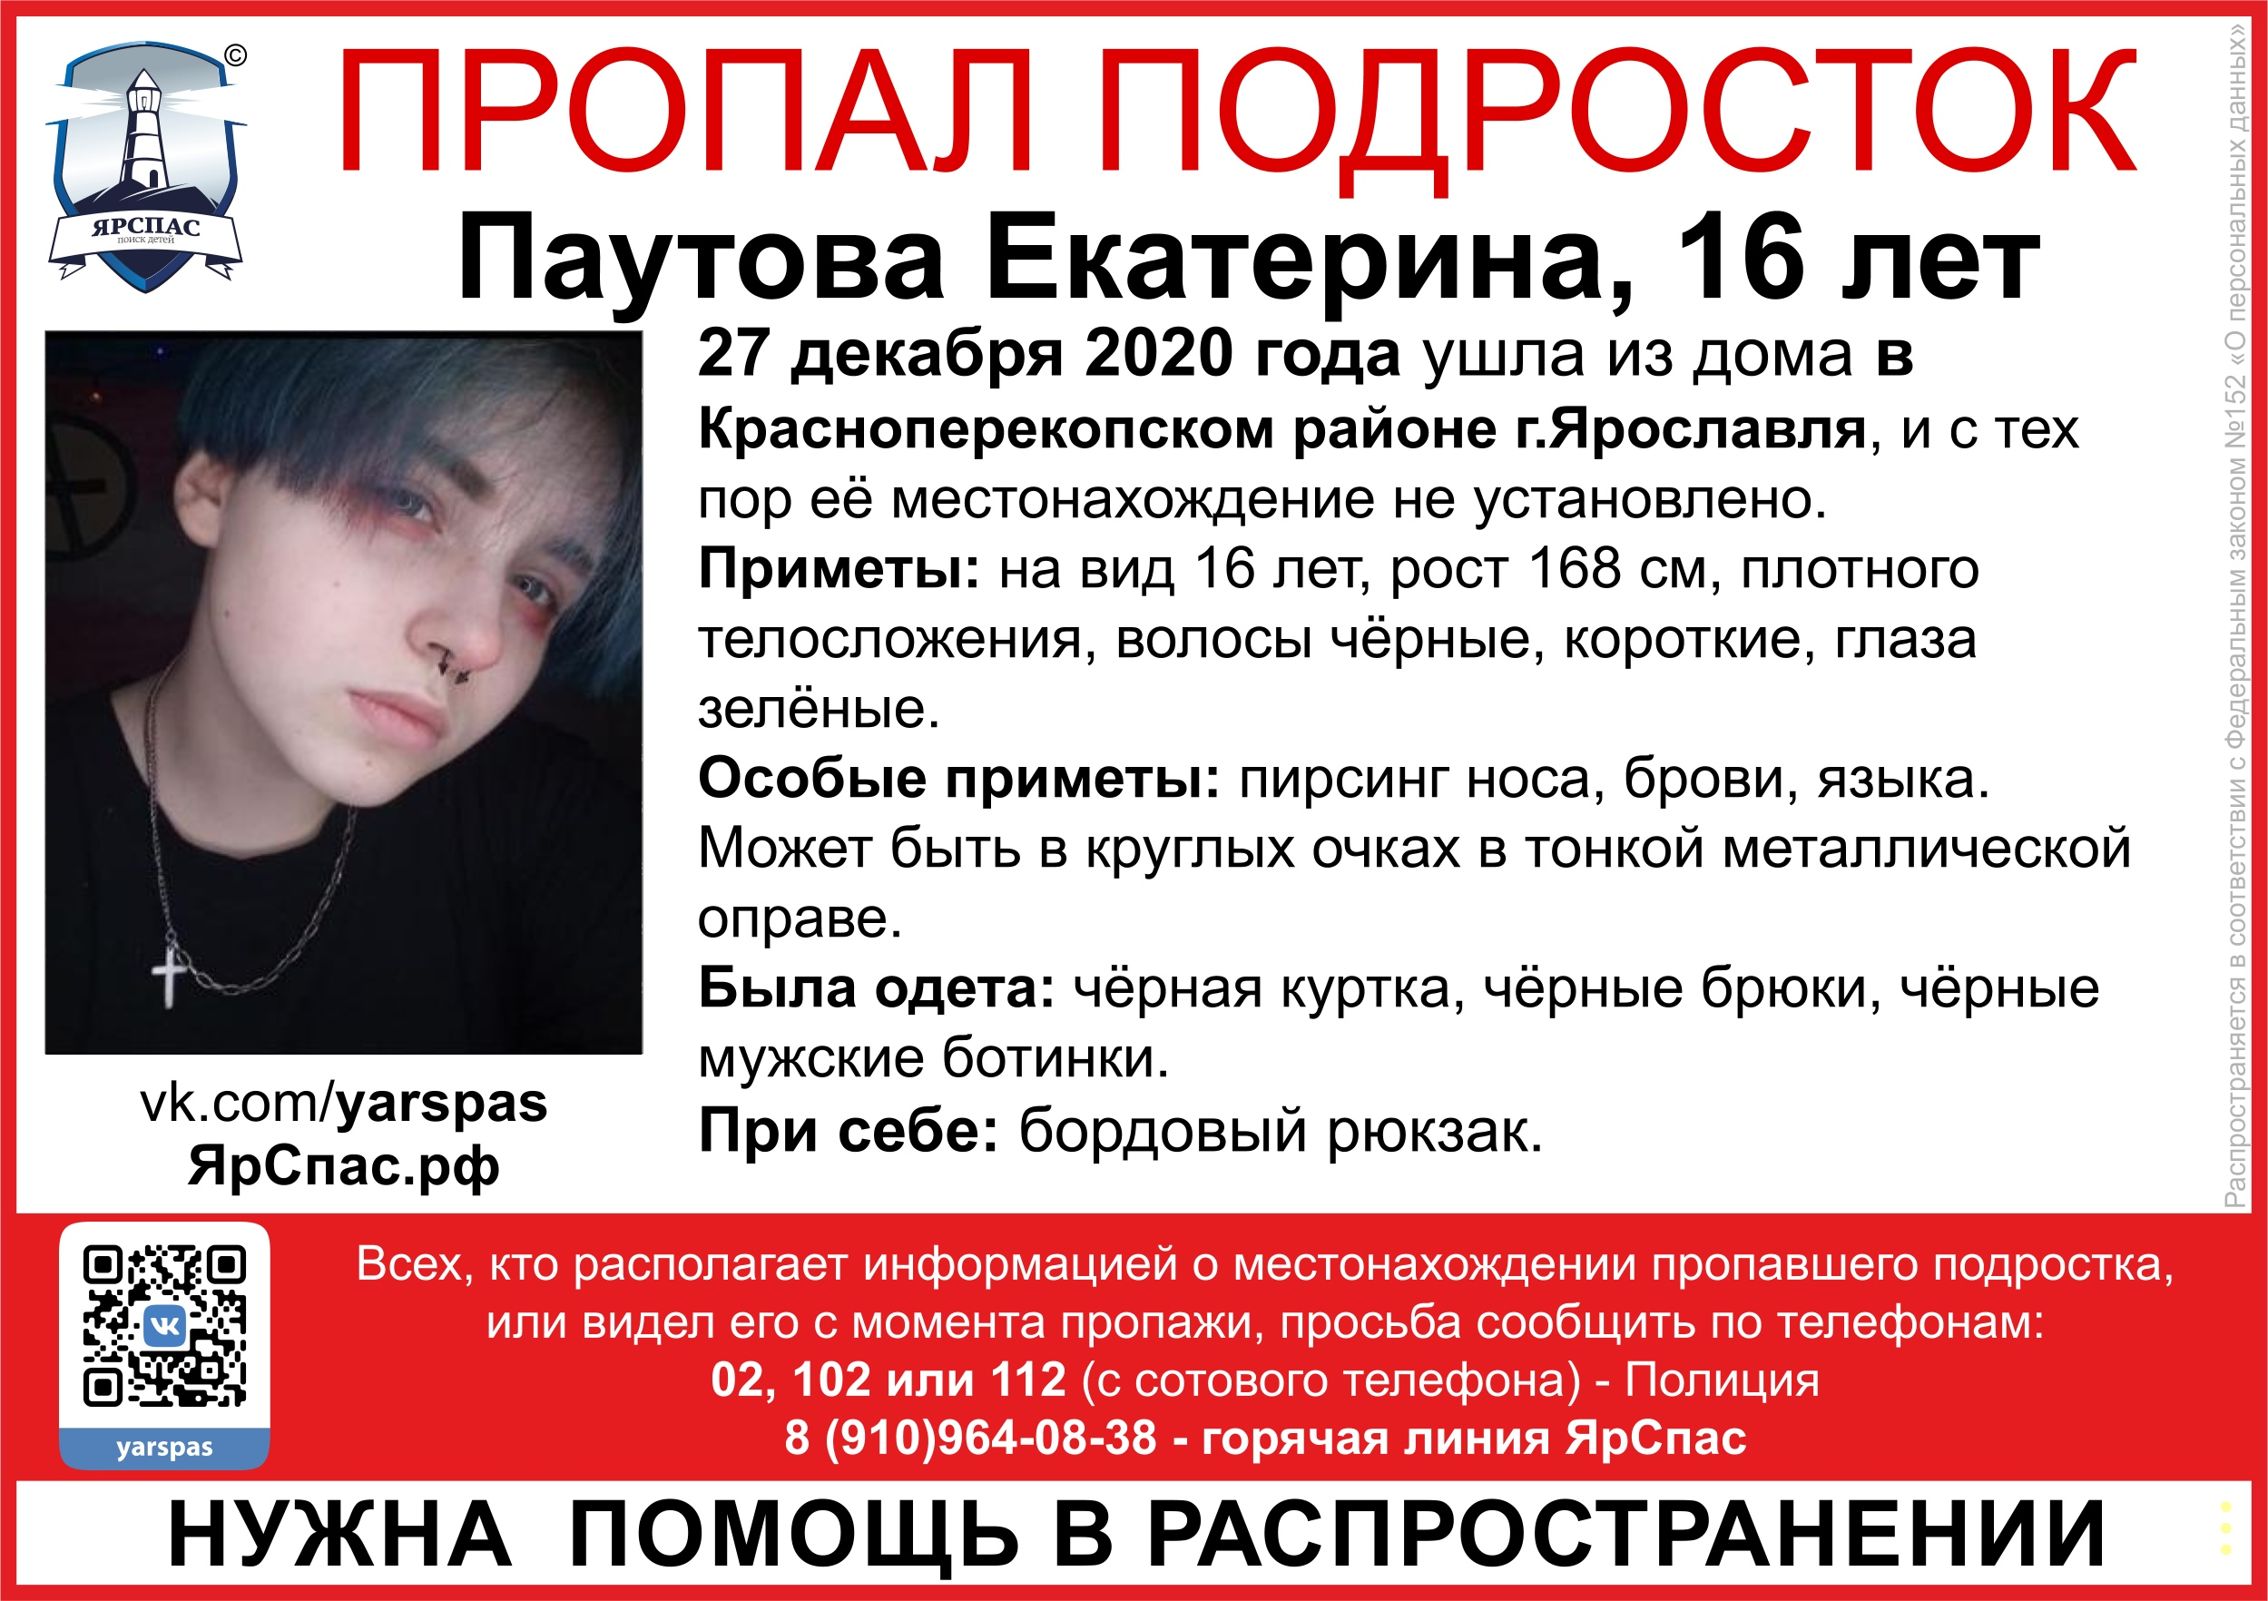 В Ярославле ищут пропавшую девушку-подростка с проколотыми бровями, носом и языком